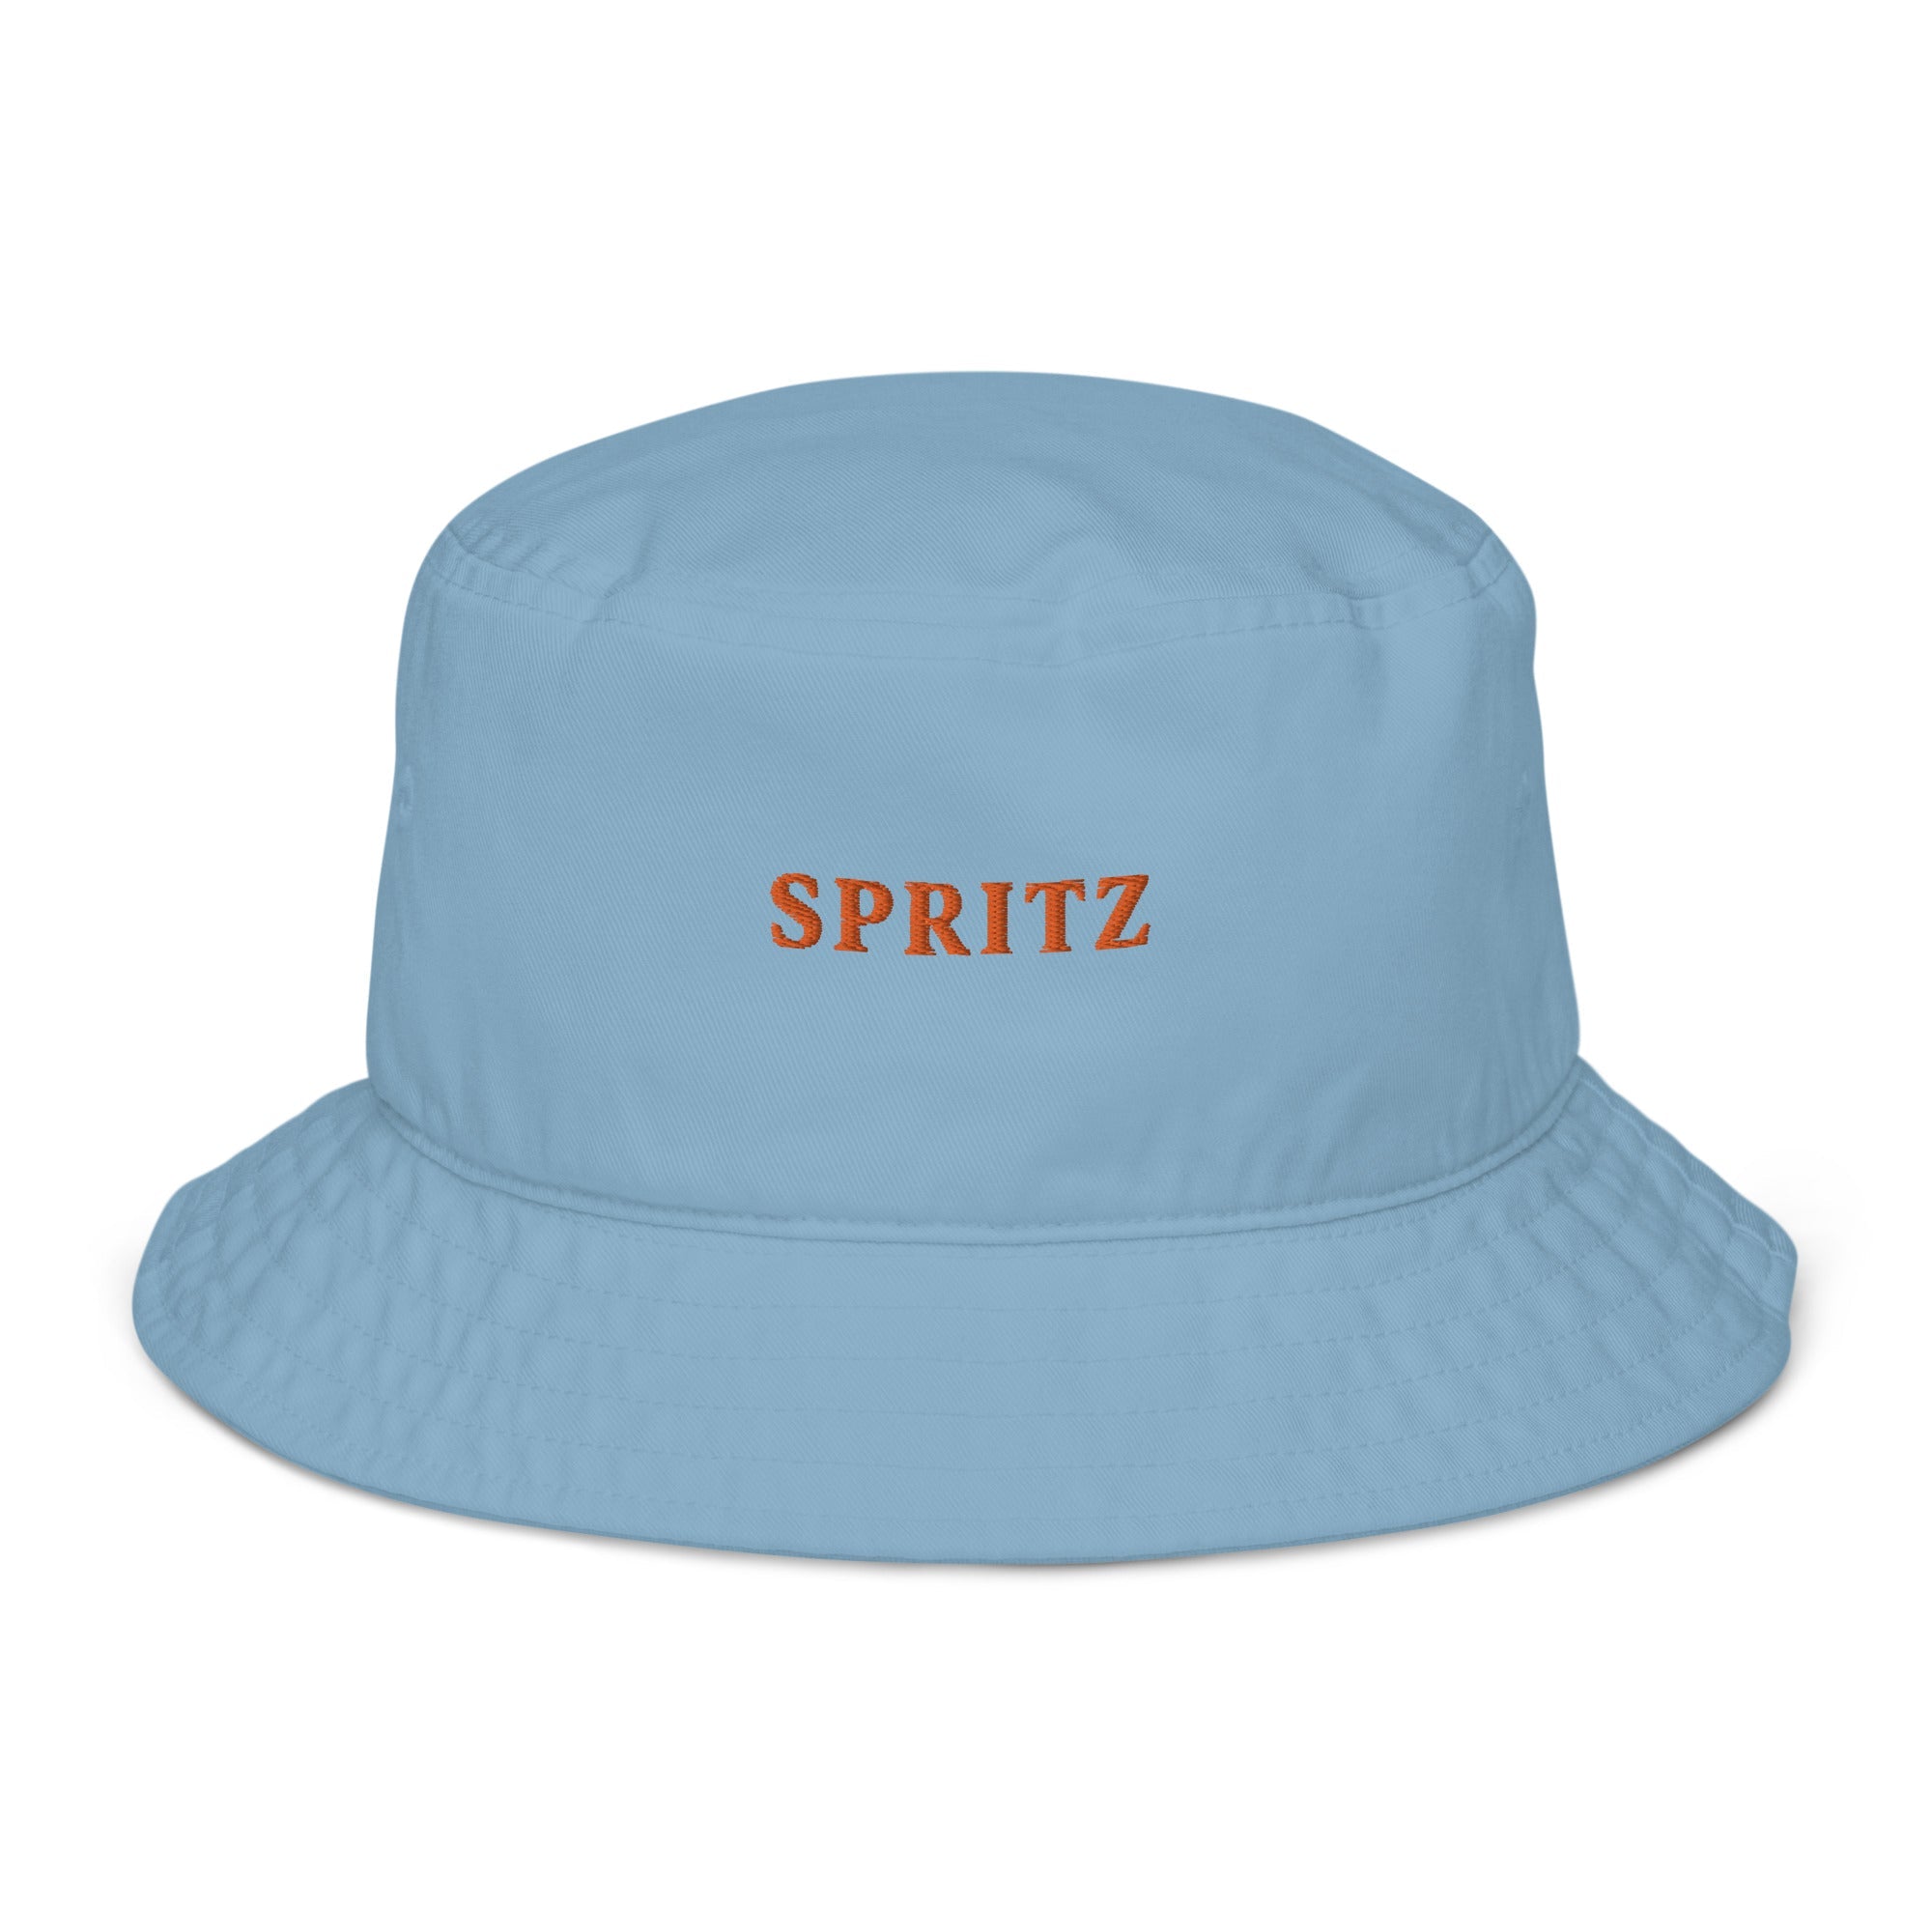 Spritz Bucket Hat - The Refined Spirit